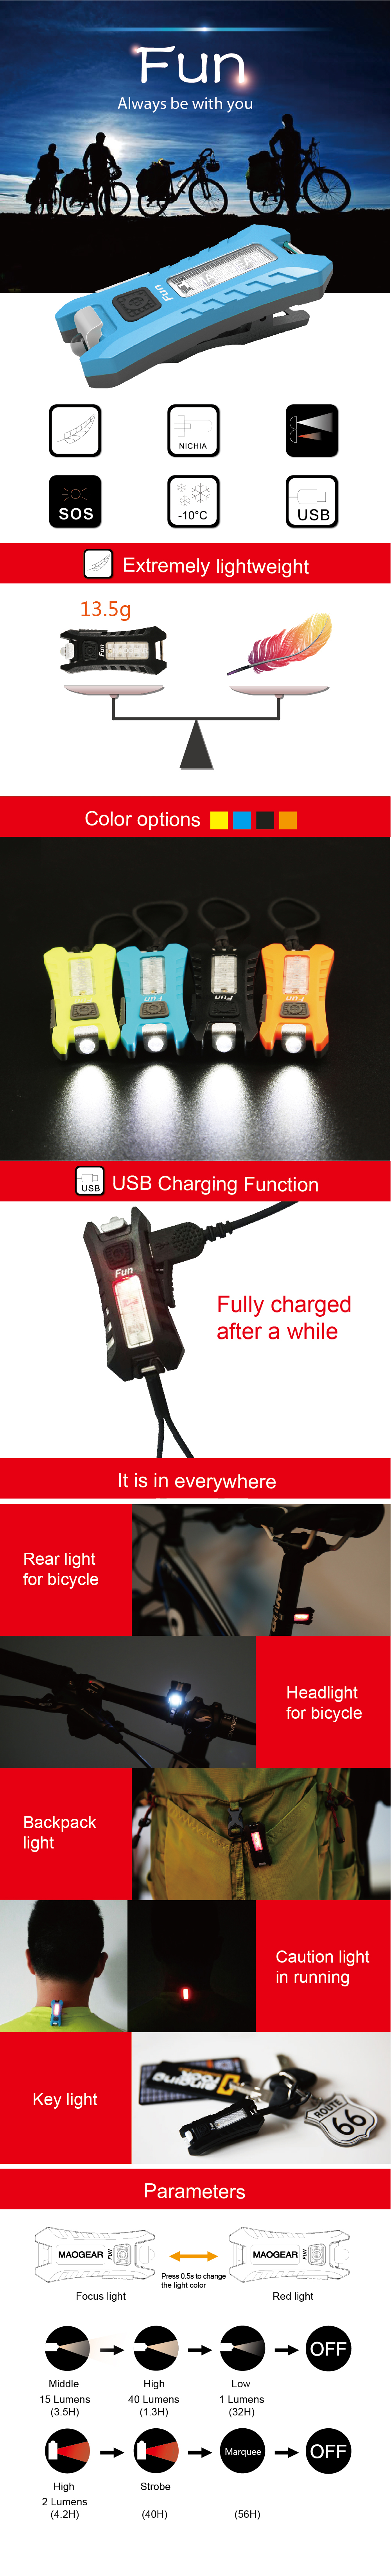 SUNREI FUN LED Mini USB Charging Key Light